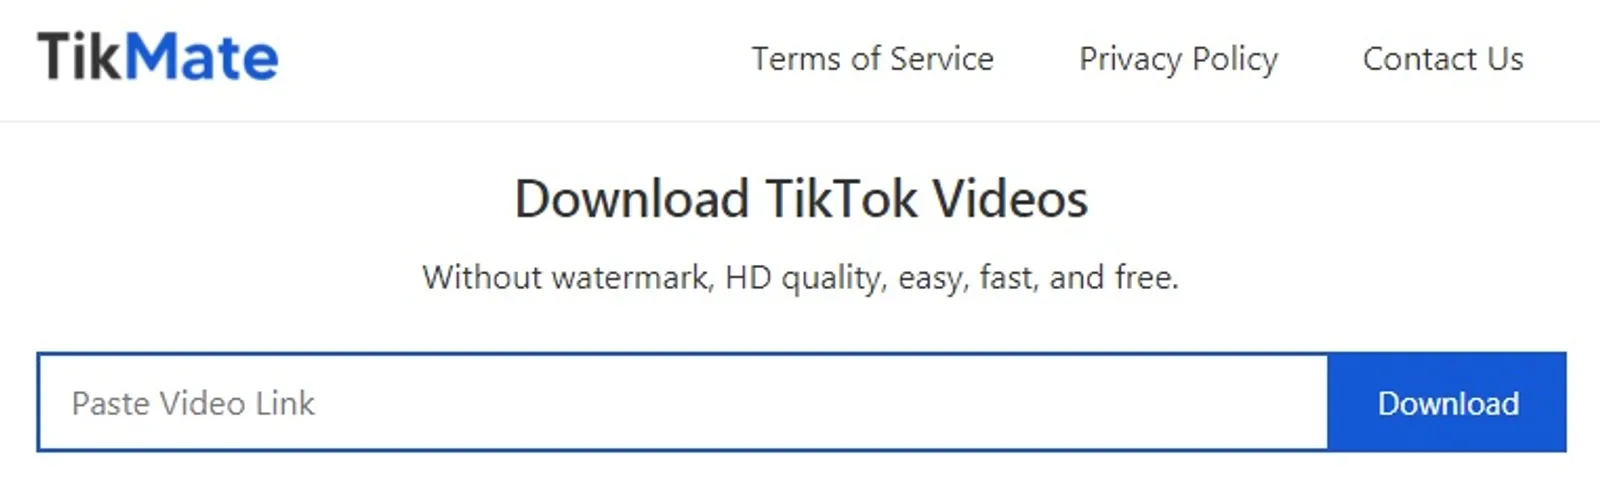 Cara Download Video Tiktok Tanpa Watermark Di HP, Laptop dan PC